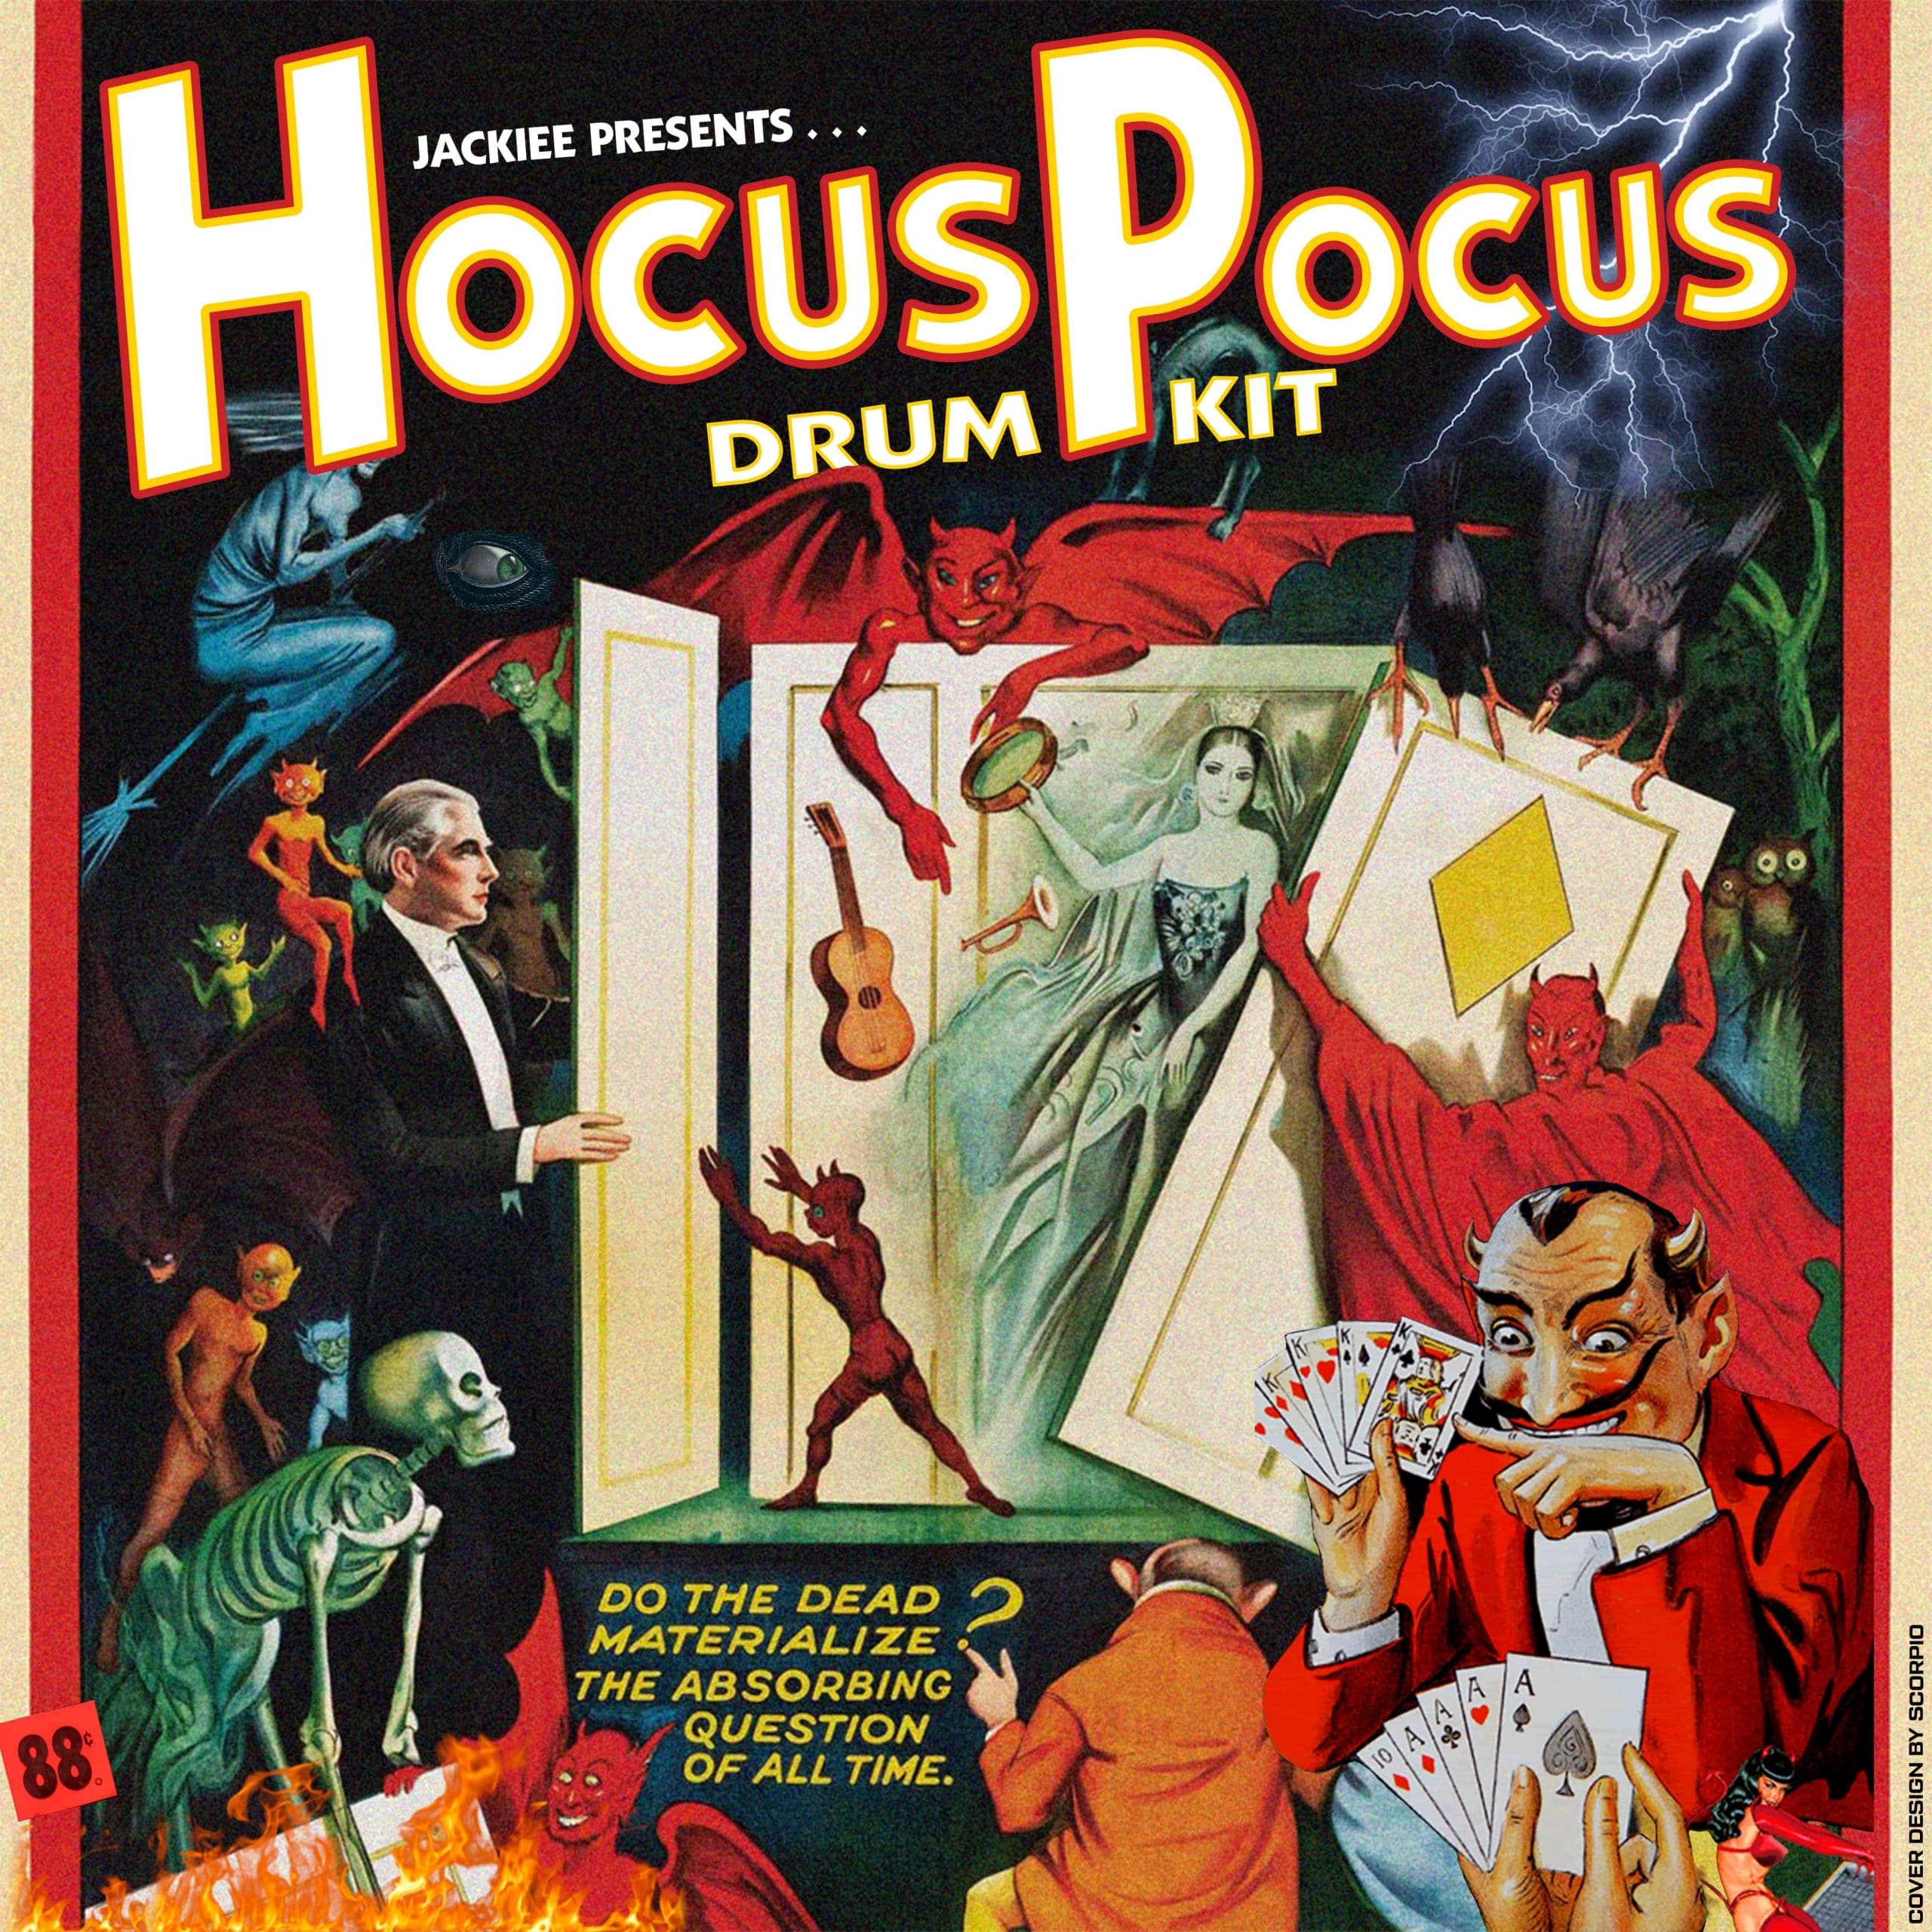 prodbyjackiee - Hocus Pocus (Drum Kit)